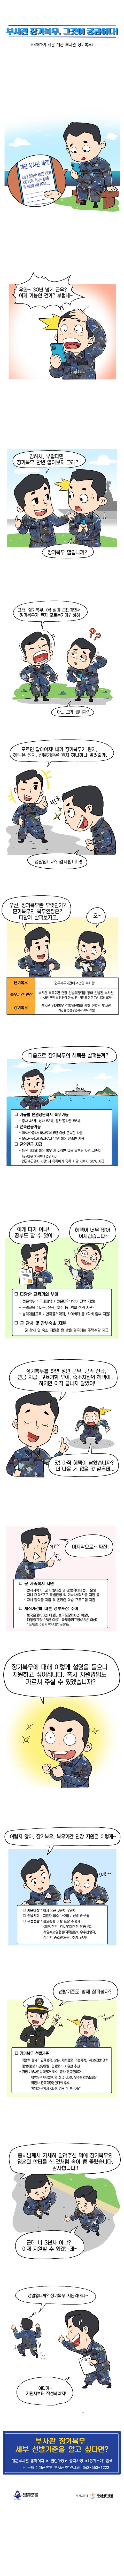 부사관 장기복무 소개